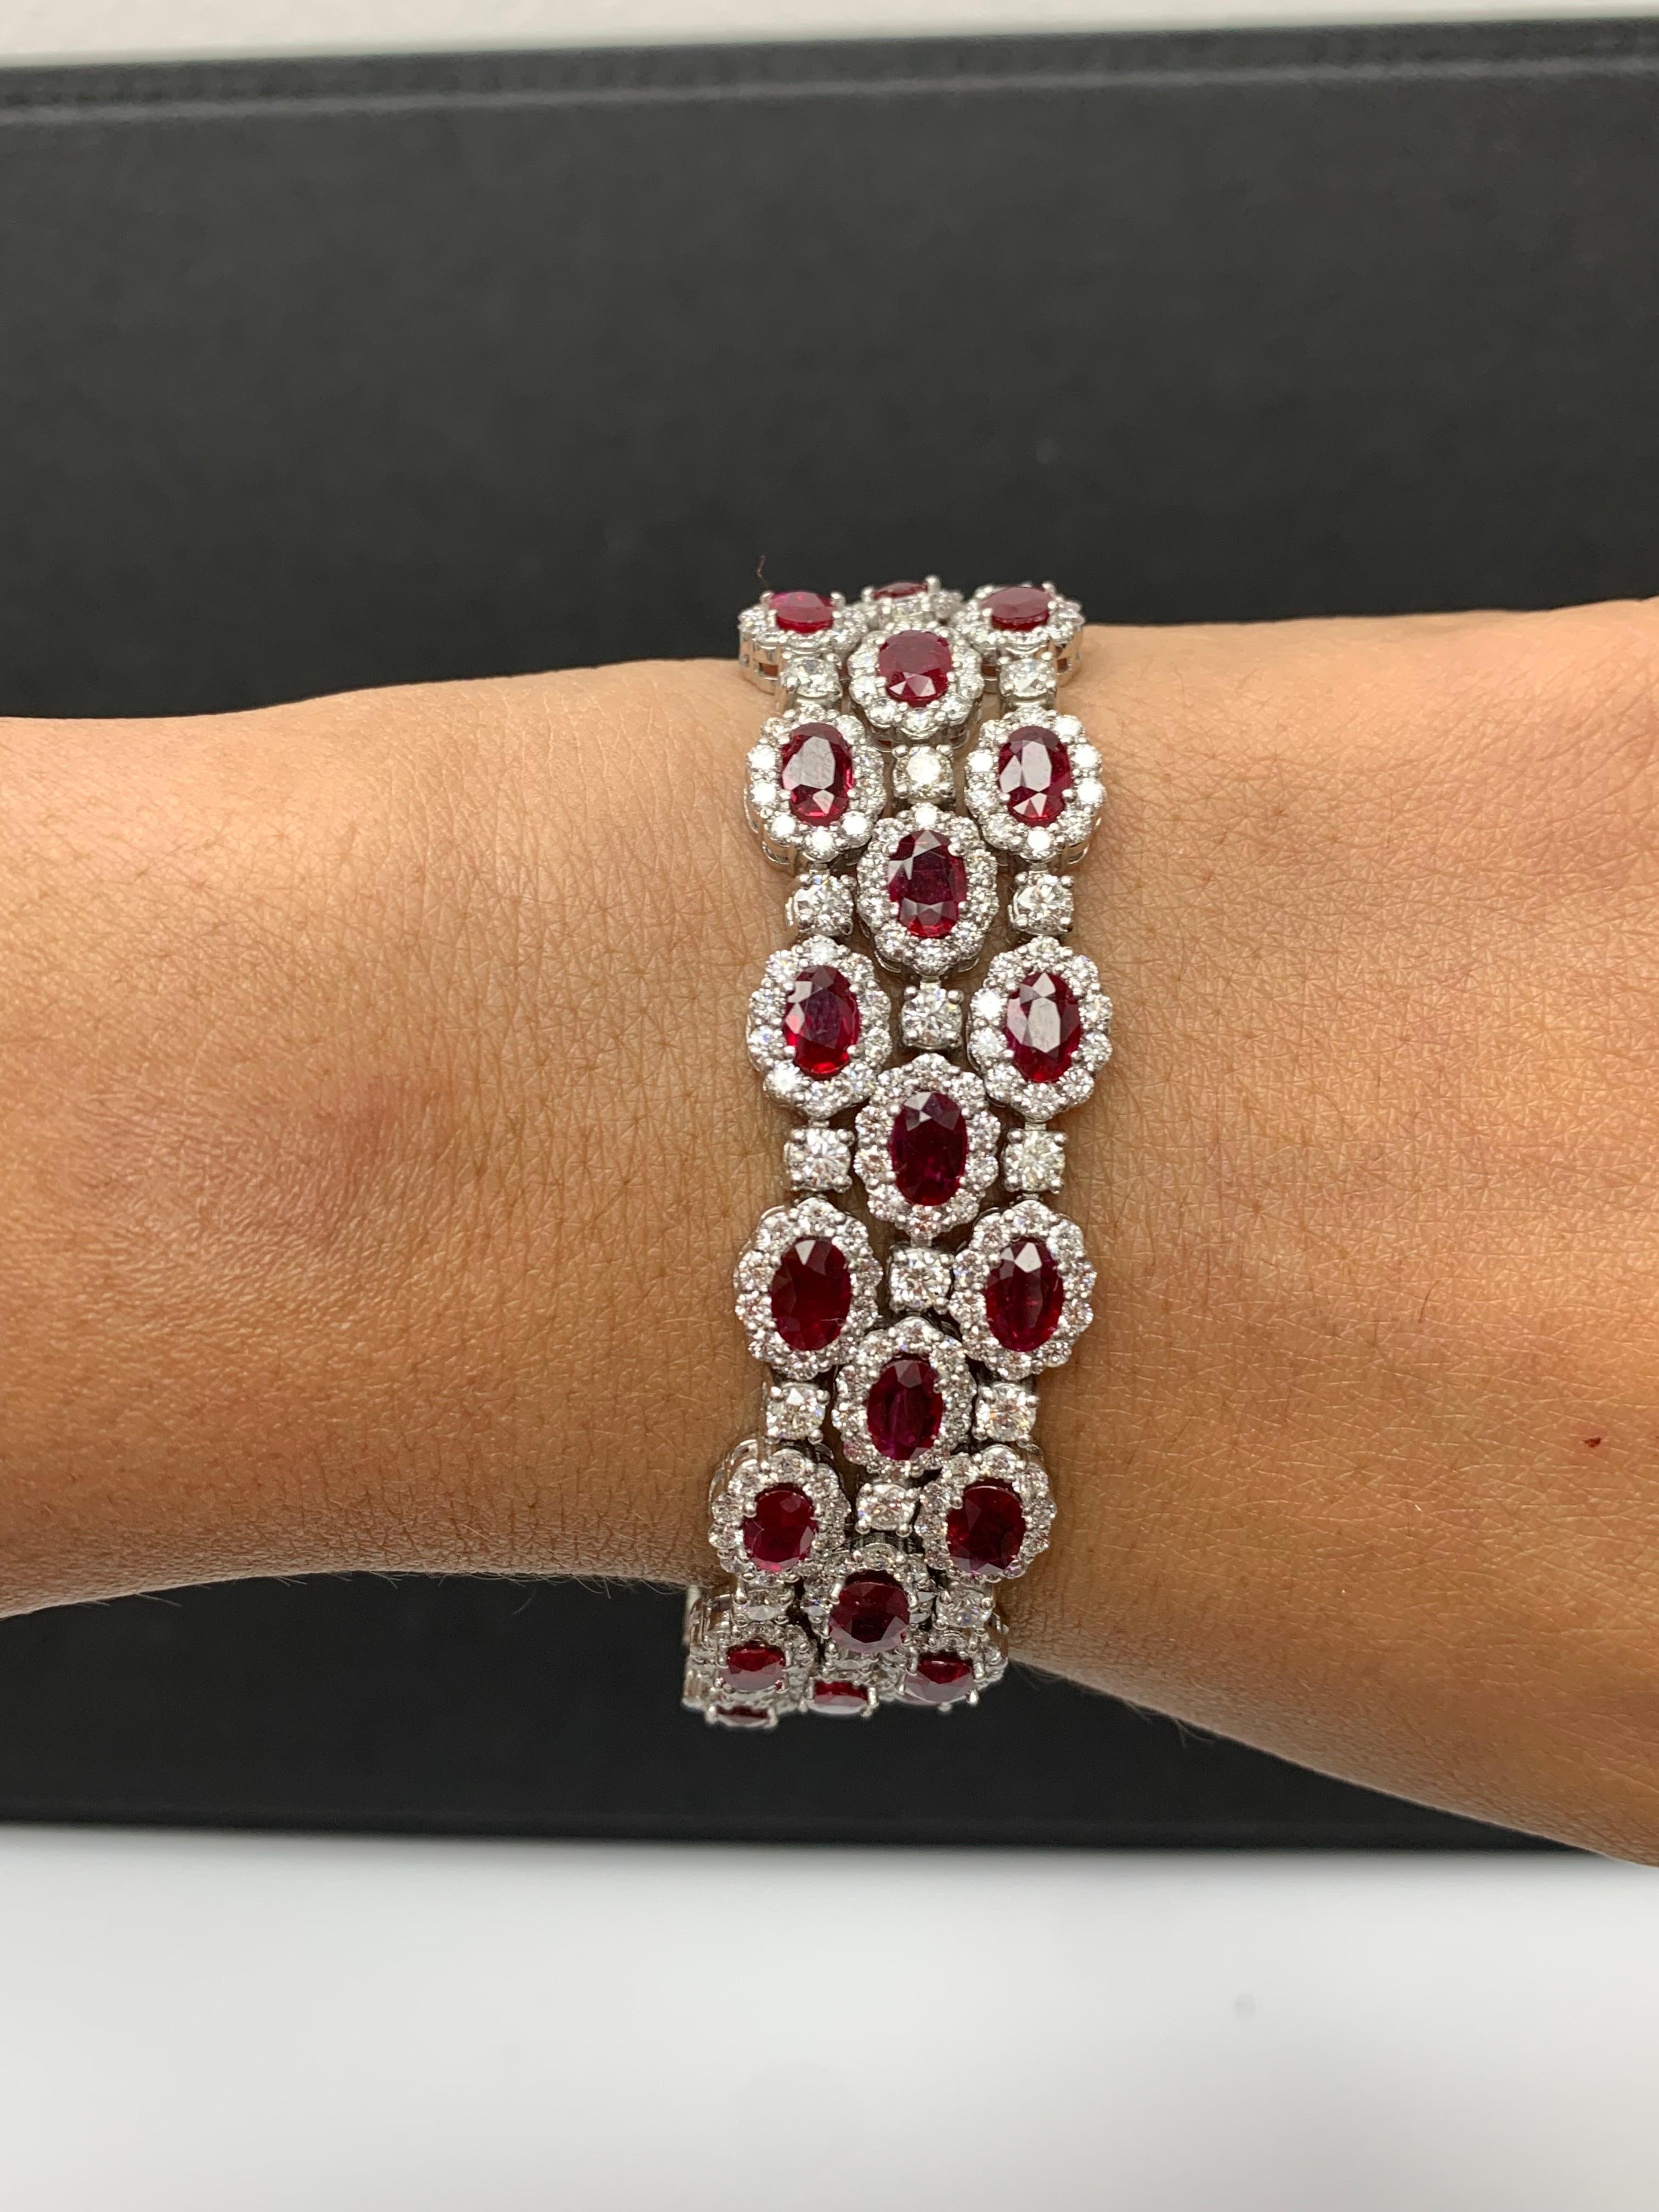 Un magnifique bracelet à trois rangs de rubis et de diamants mettant en valeur des rubis riches en couleurs, entourés d'une seule rangée de diamants ronds brillants. 42 rubis rouges luxuriants de taille ovale pèsent 18,01 carats au total ; 420